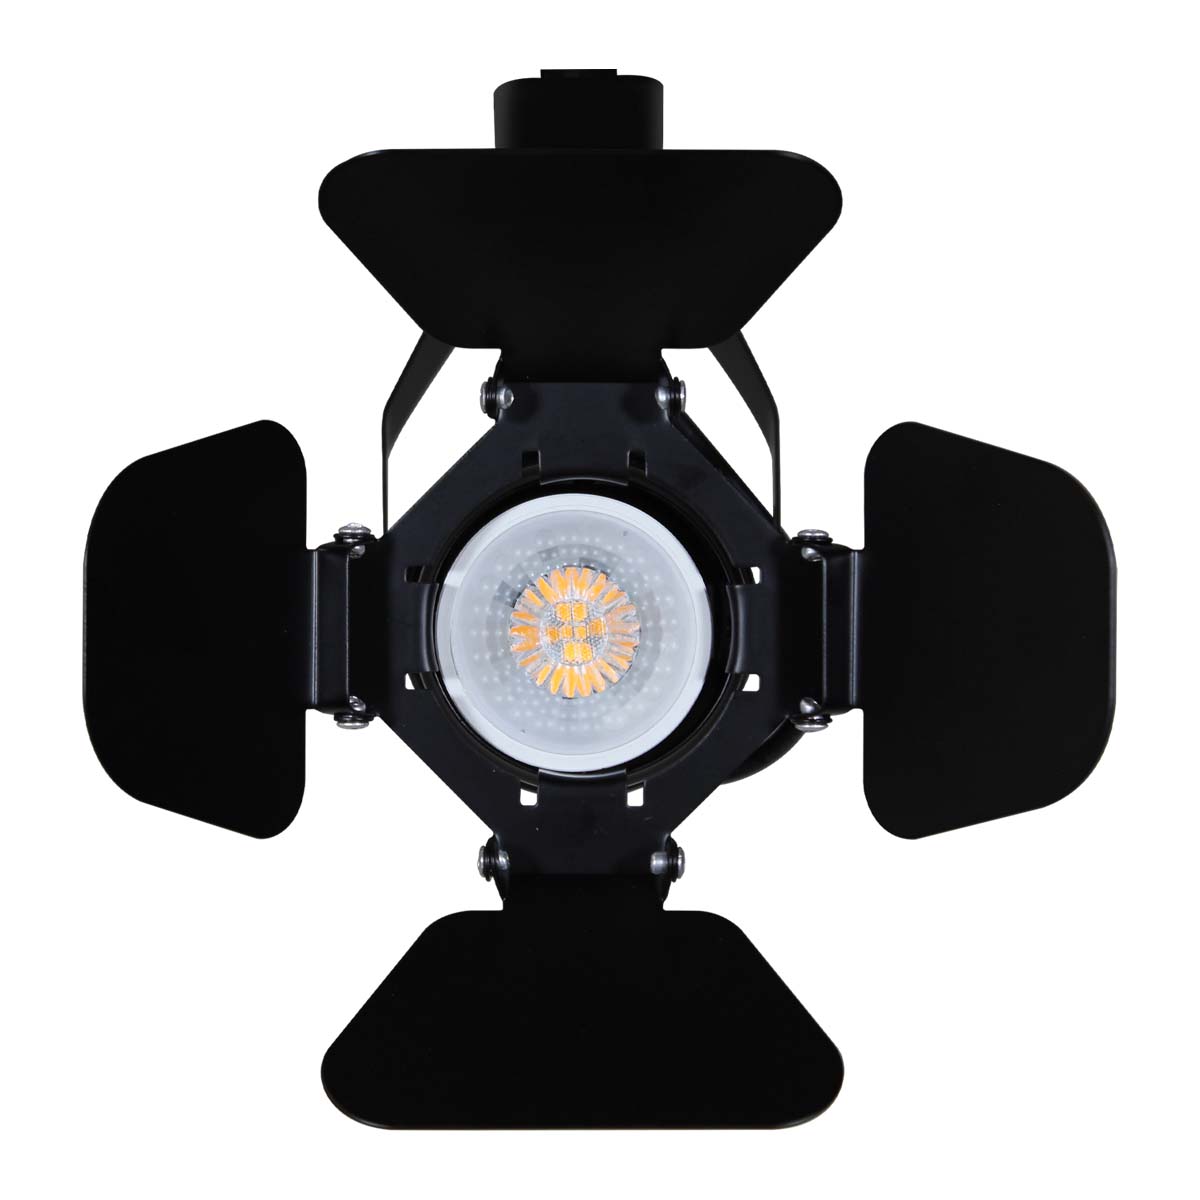 Luminaria con cortadores para riel en techo 50W Max 120V~ tipo spotlight, Modelo TL-5141.R Illux